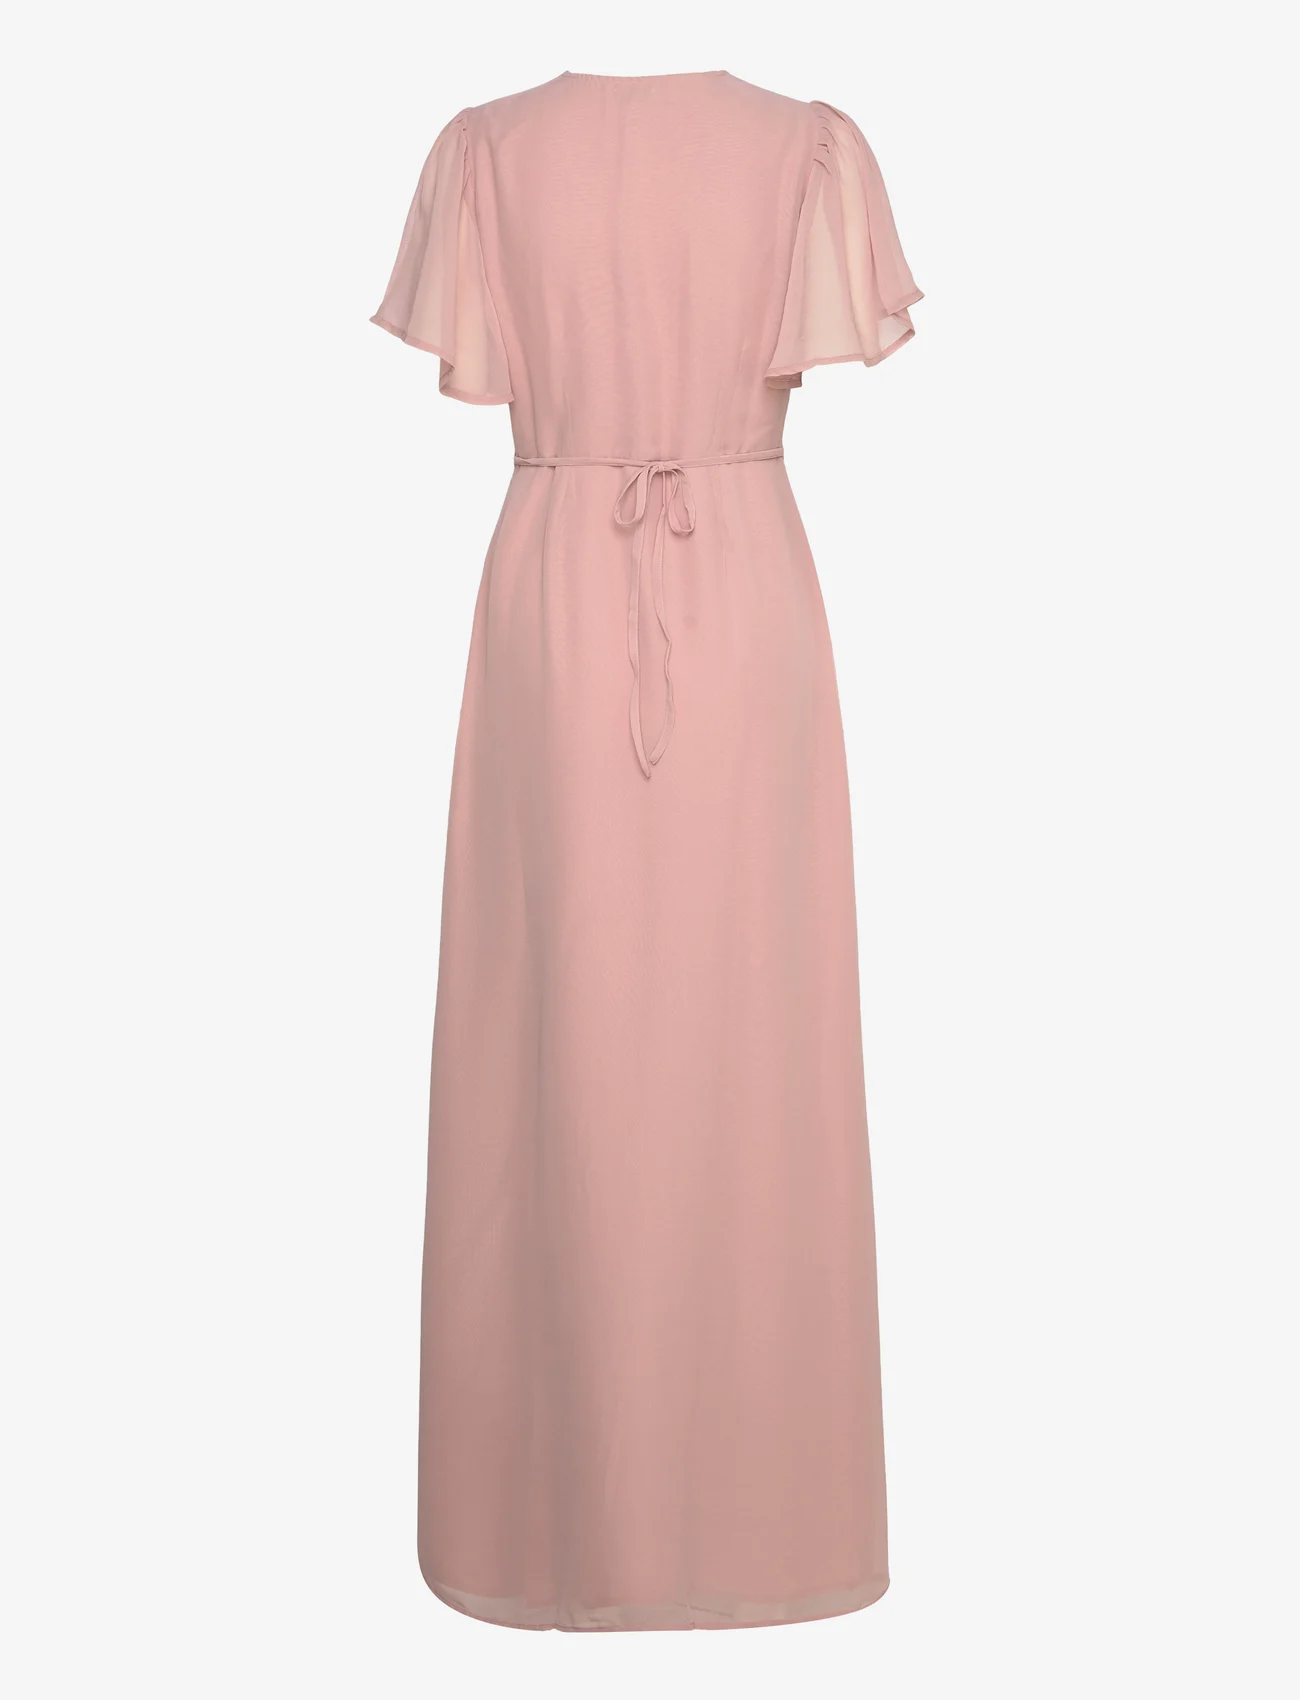 Bubbleroom - Belisse Gown - odzież imprezowa w cenach outletowych - pink - 1